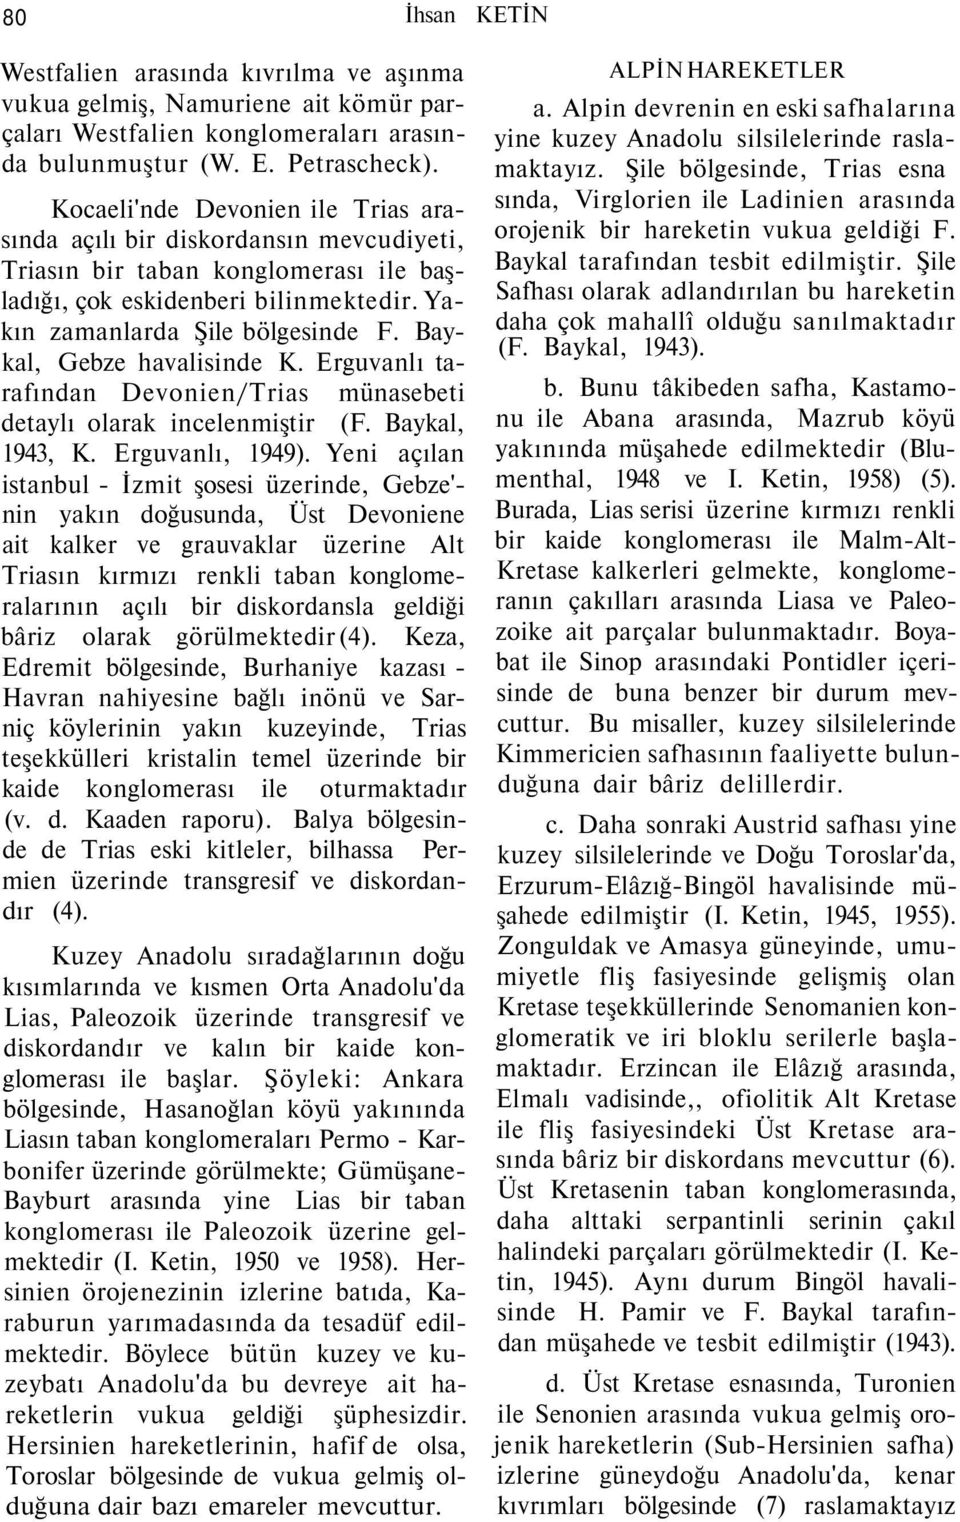 Baykal, Gebze havalisinde K. Erguvanlı tarafından Devonien/Trias münasebeti detaylı olarak incelenmiştir (F. Baykal, 1943, K. Erguvanlı, 1949).